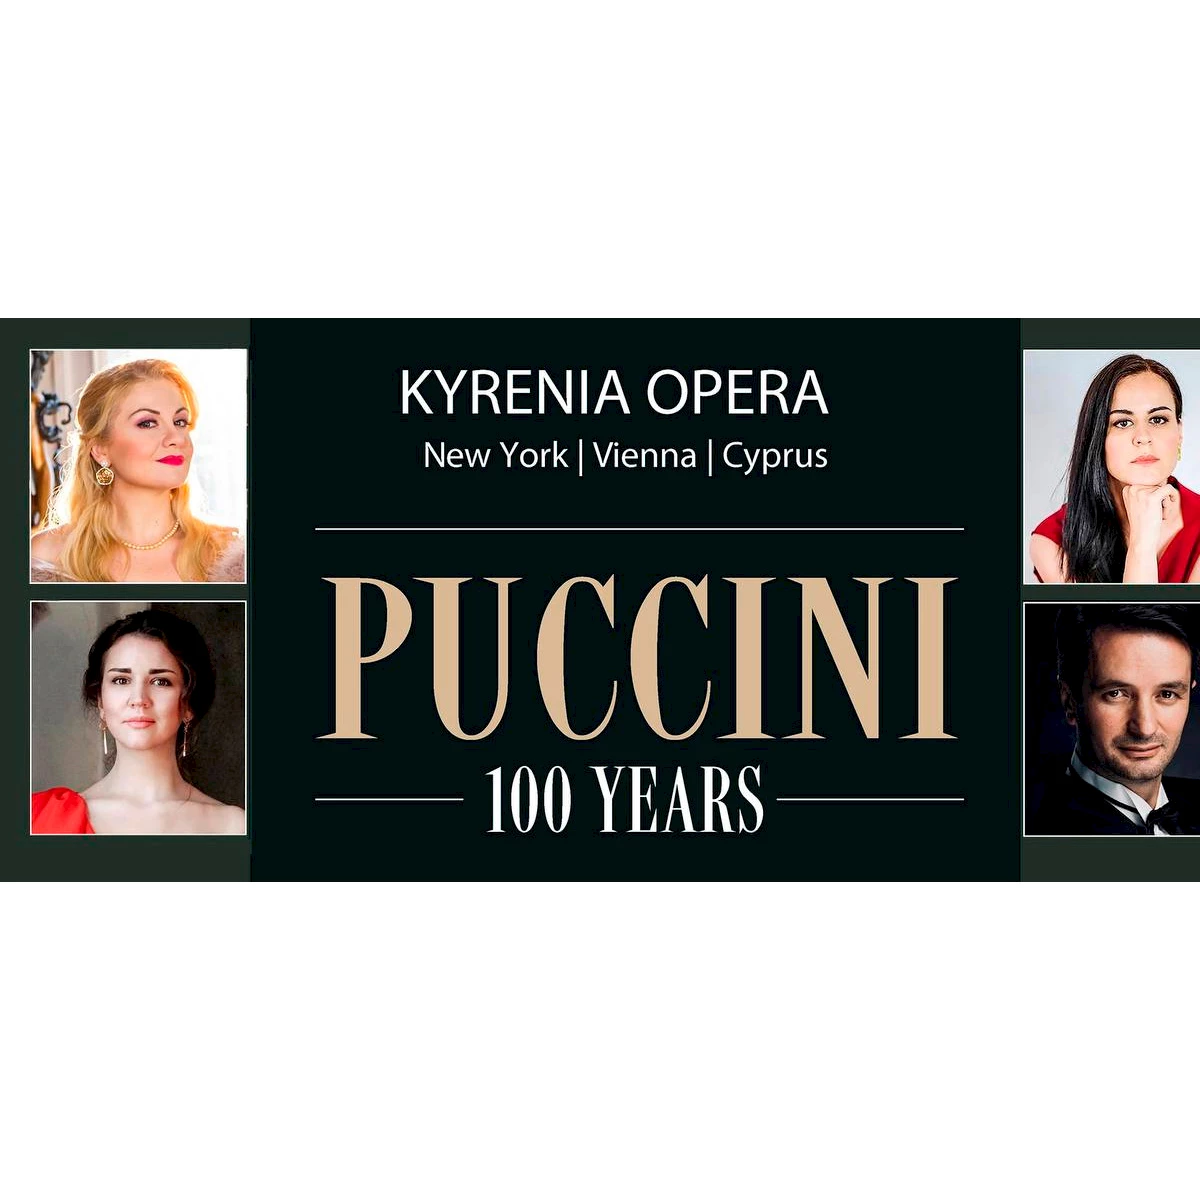 Kirenijas opera prezentē izrādi "Pučini: 100 gadi"